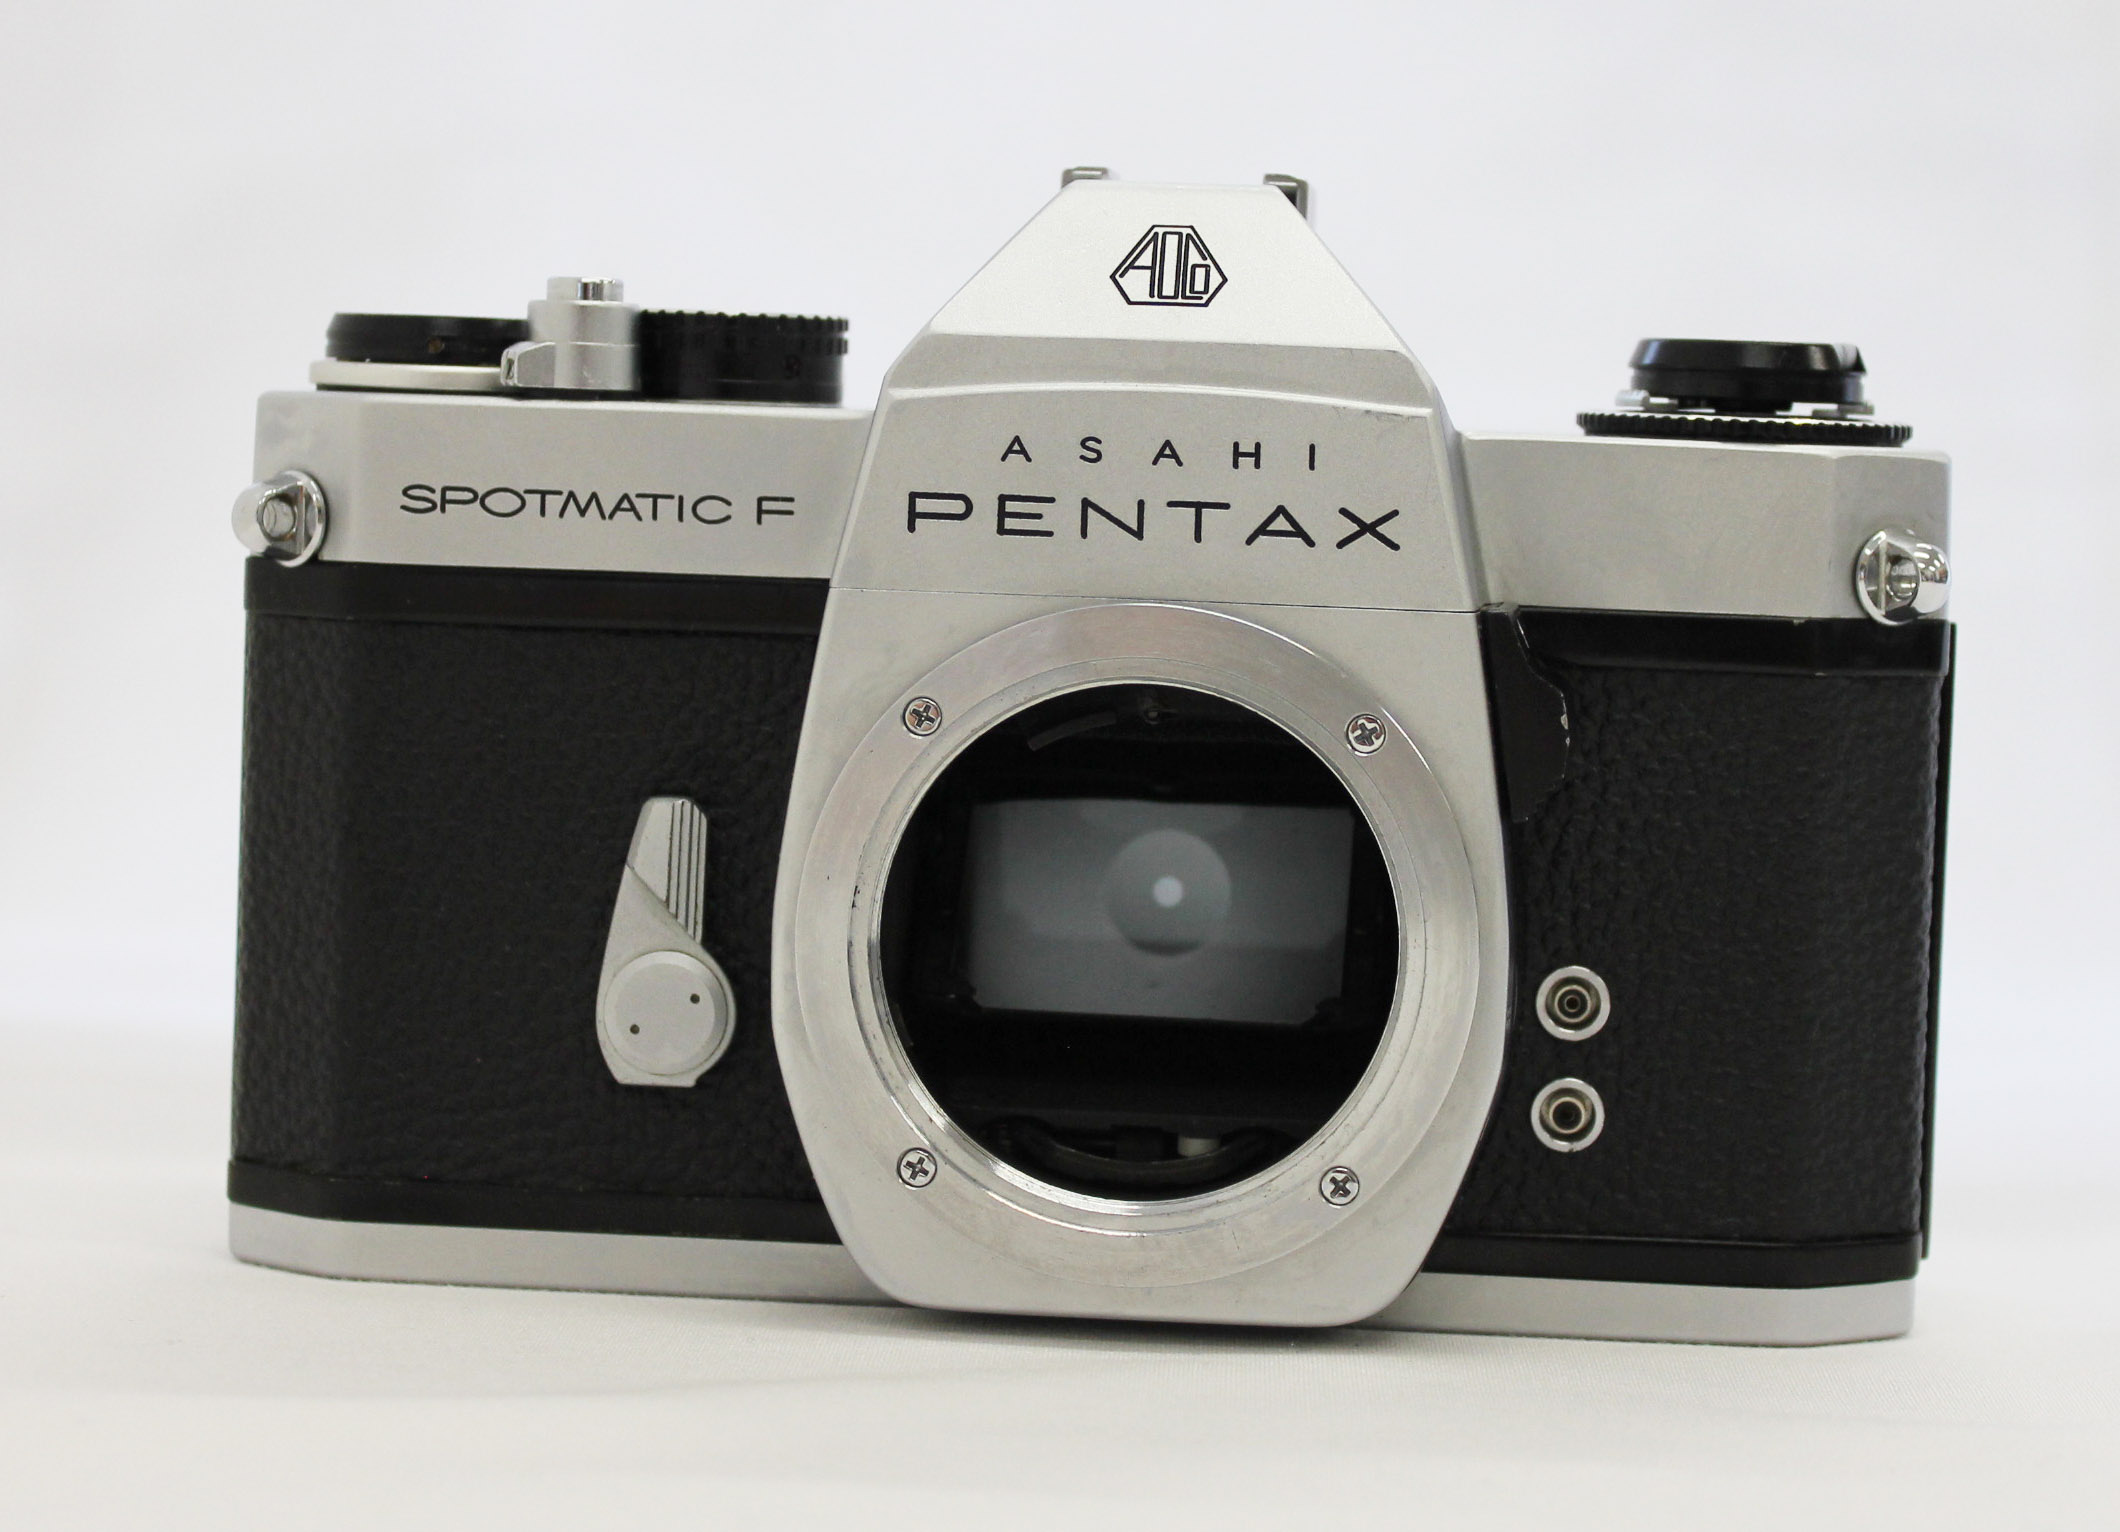 Asahi Pentax Spotmatic F SPF Camera w/ Super Takumar 55mm F/1.8 